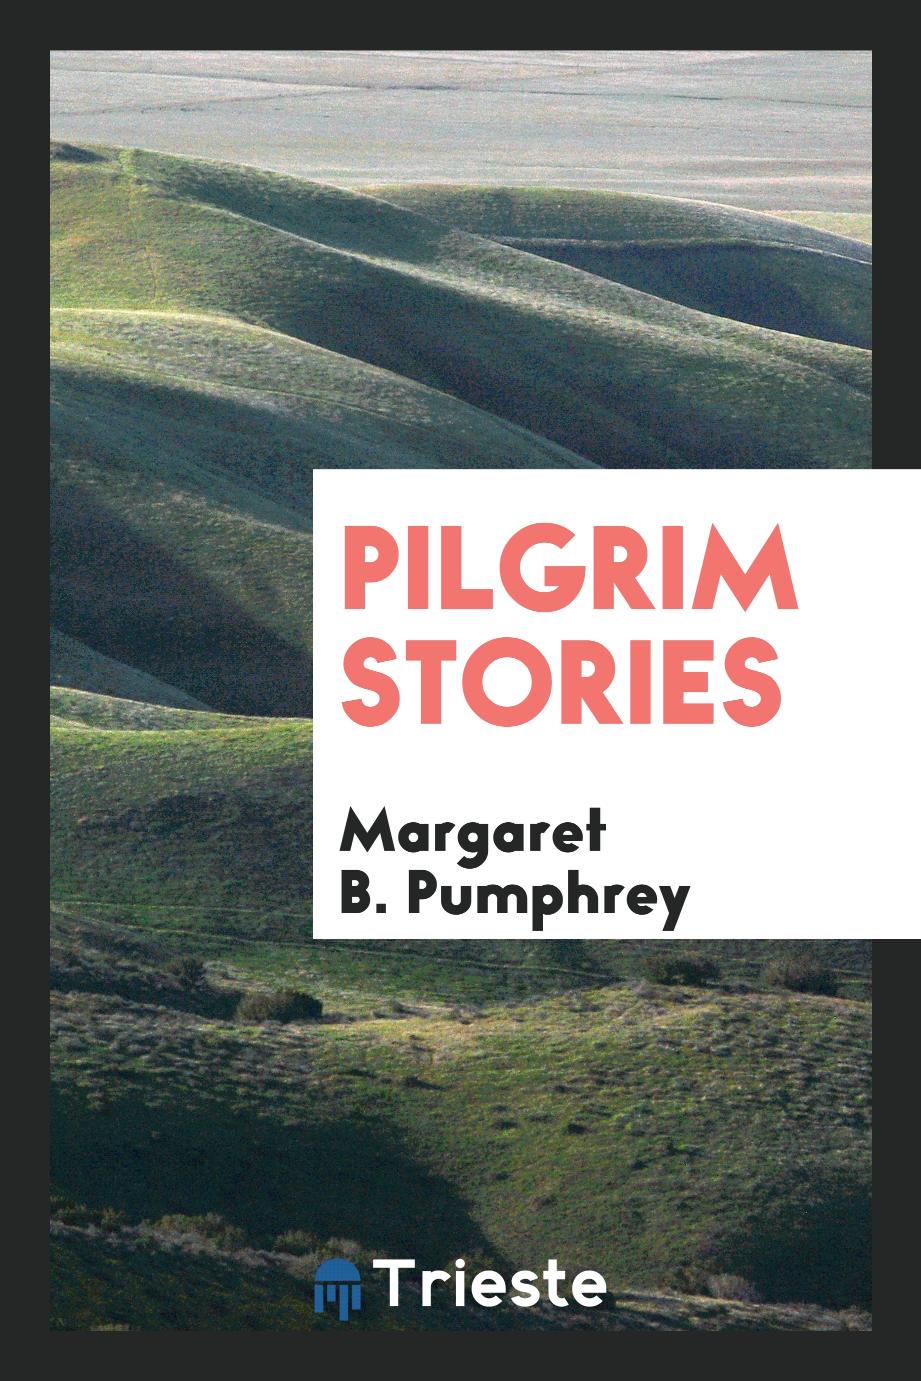 Pilgrim stories